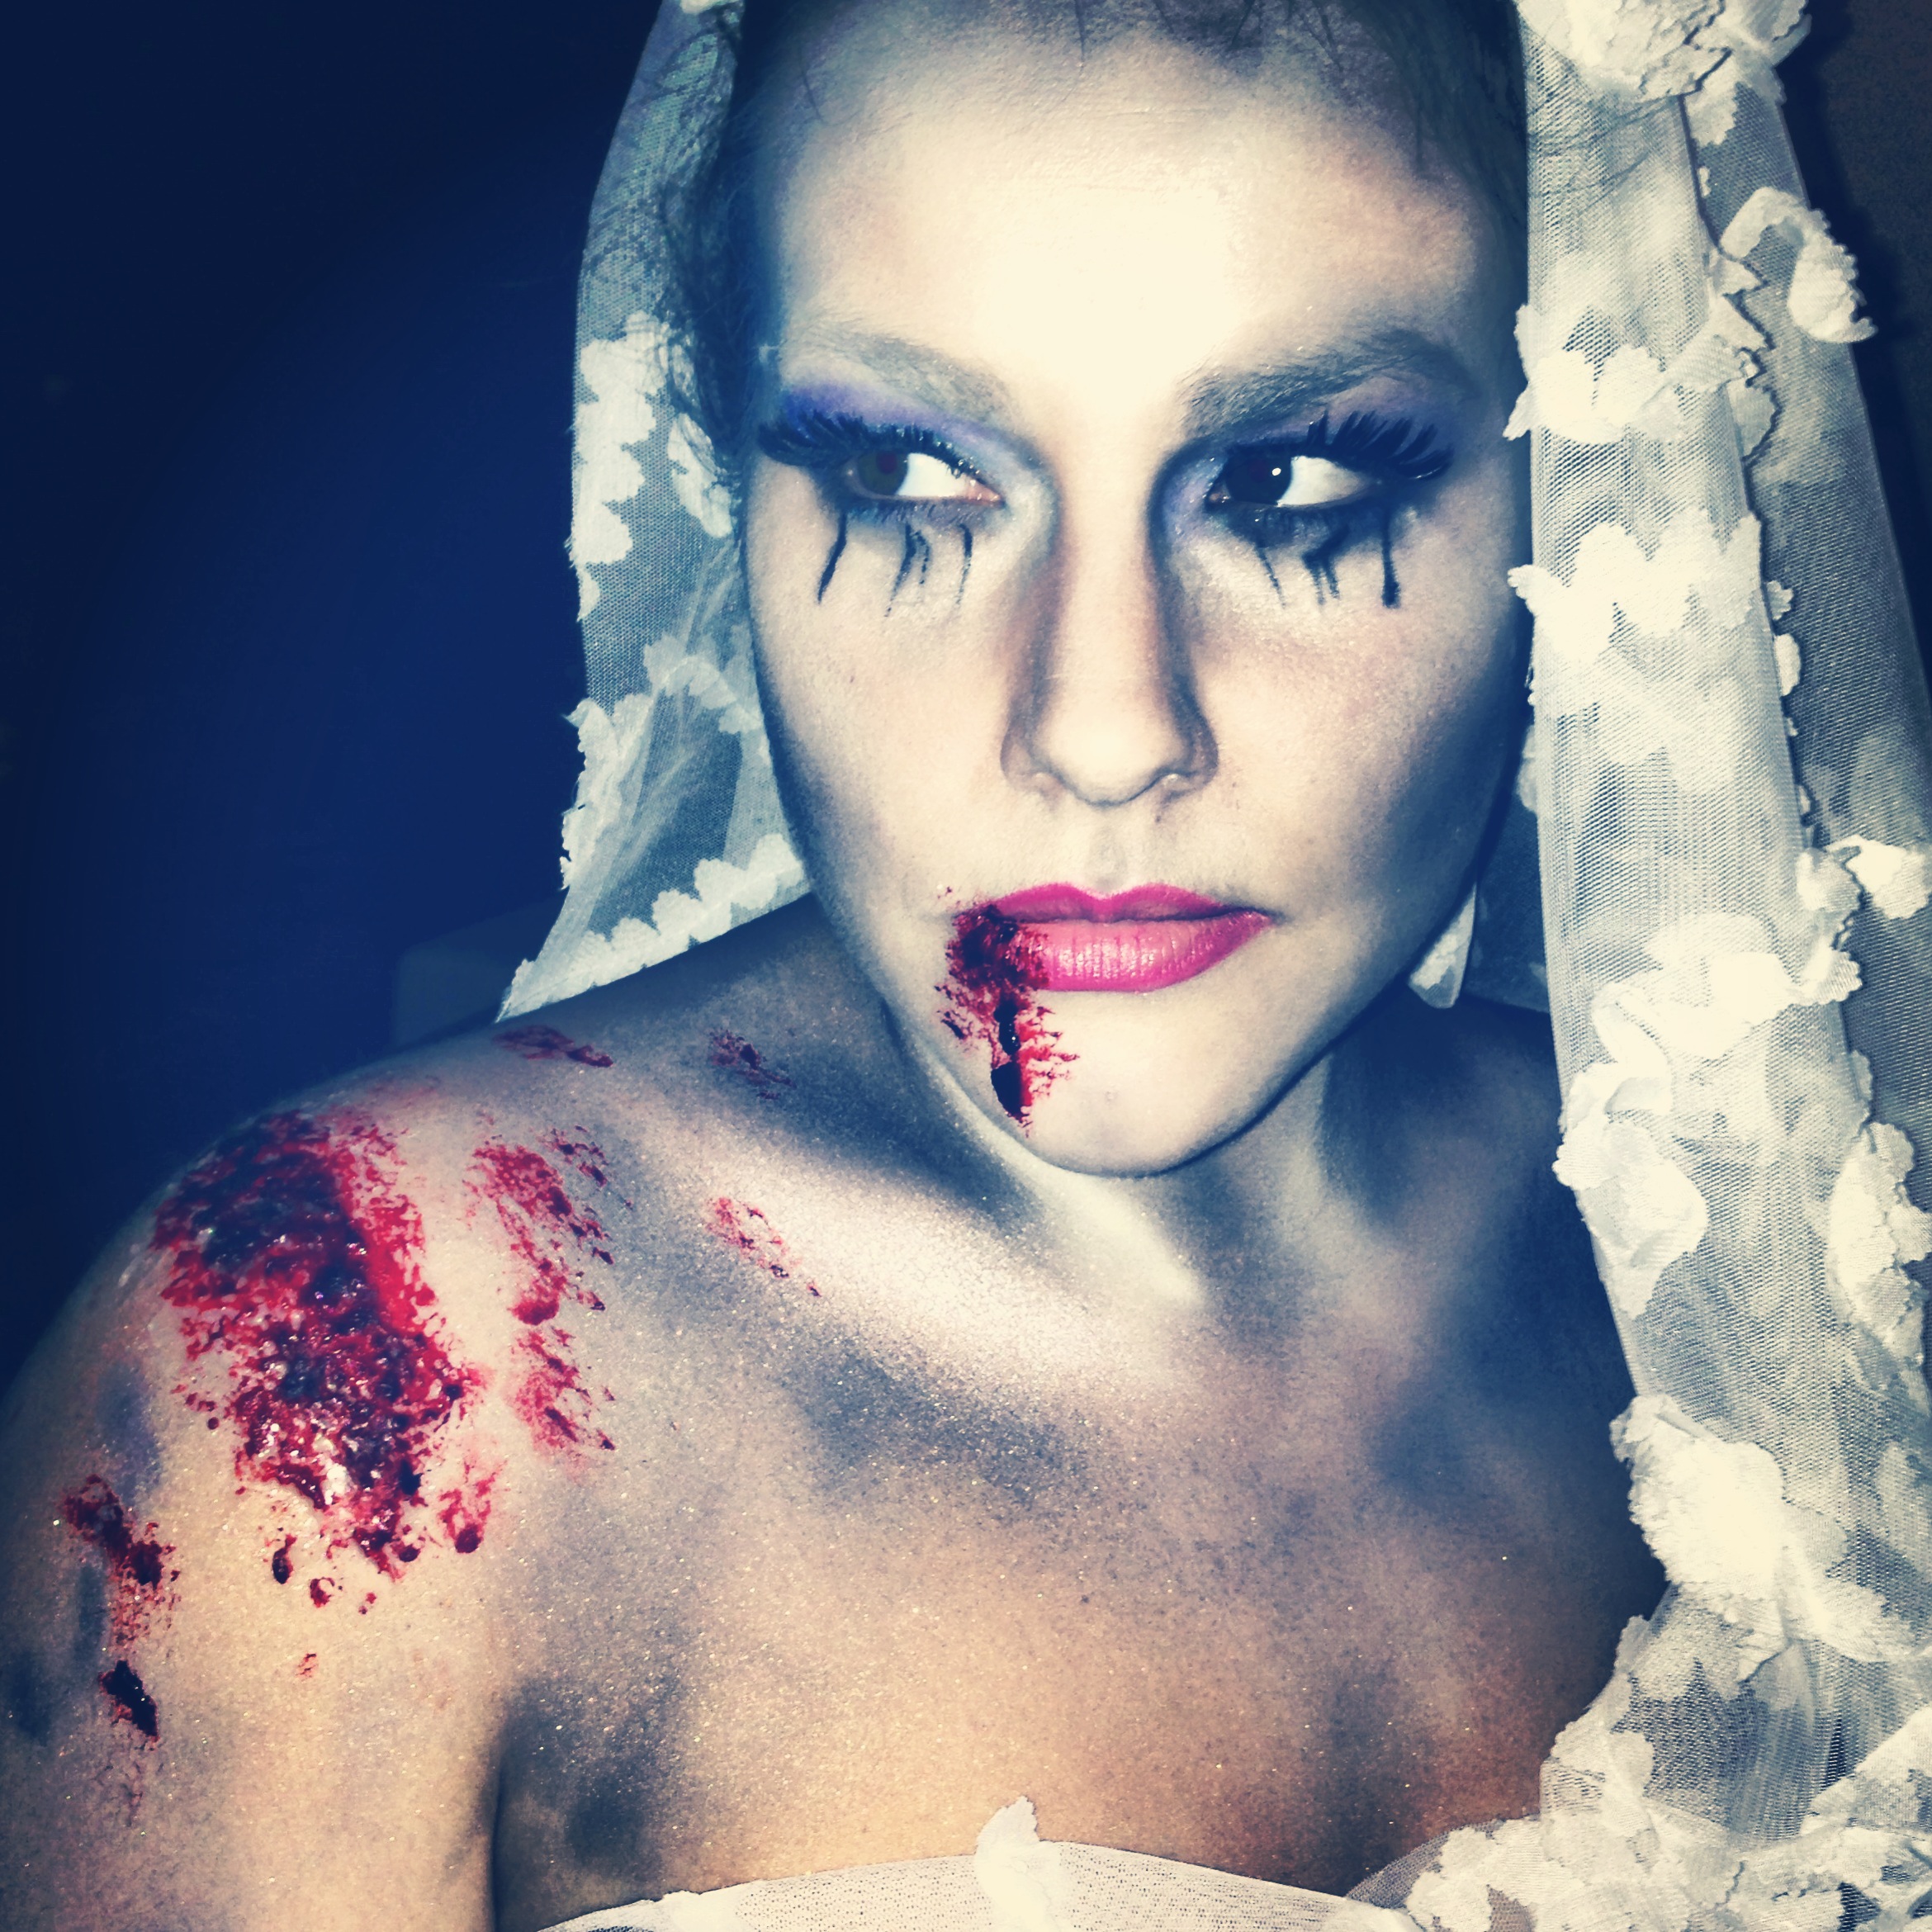 The Zombie Bride, 2014